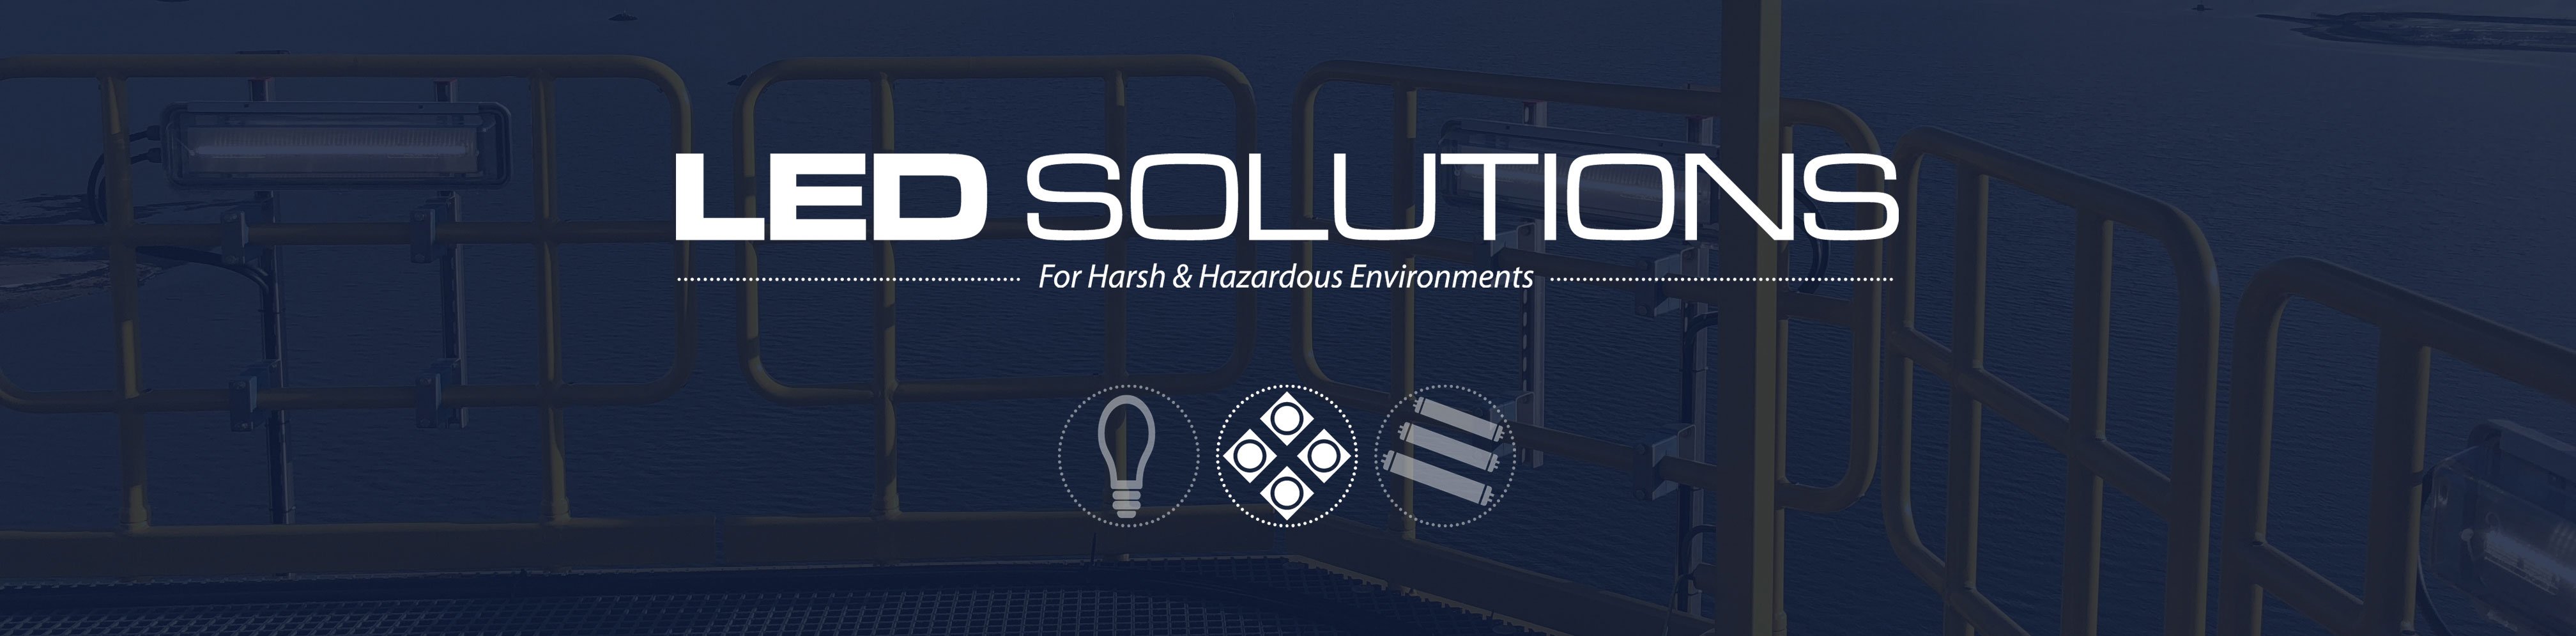 LED-Solutions-banner.jpg